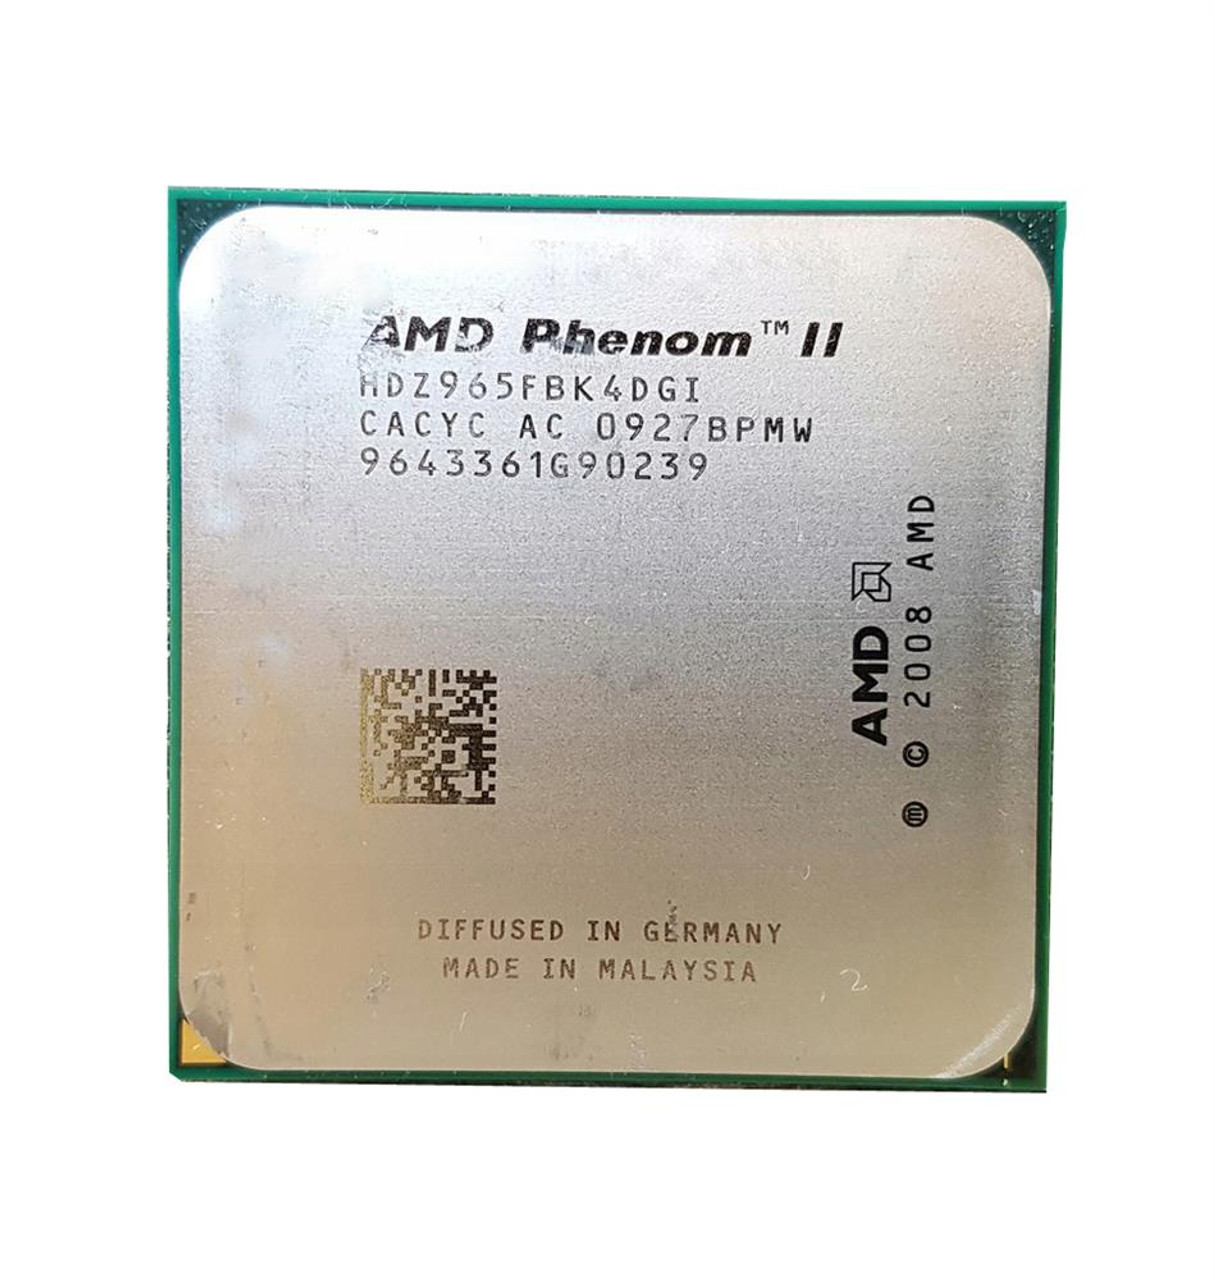 HDZ965FBK4DGI AMD Phenom II X4 965 Quad-Core 3.40GHz 4.00GT/s 6MB L3 C